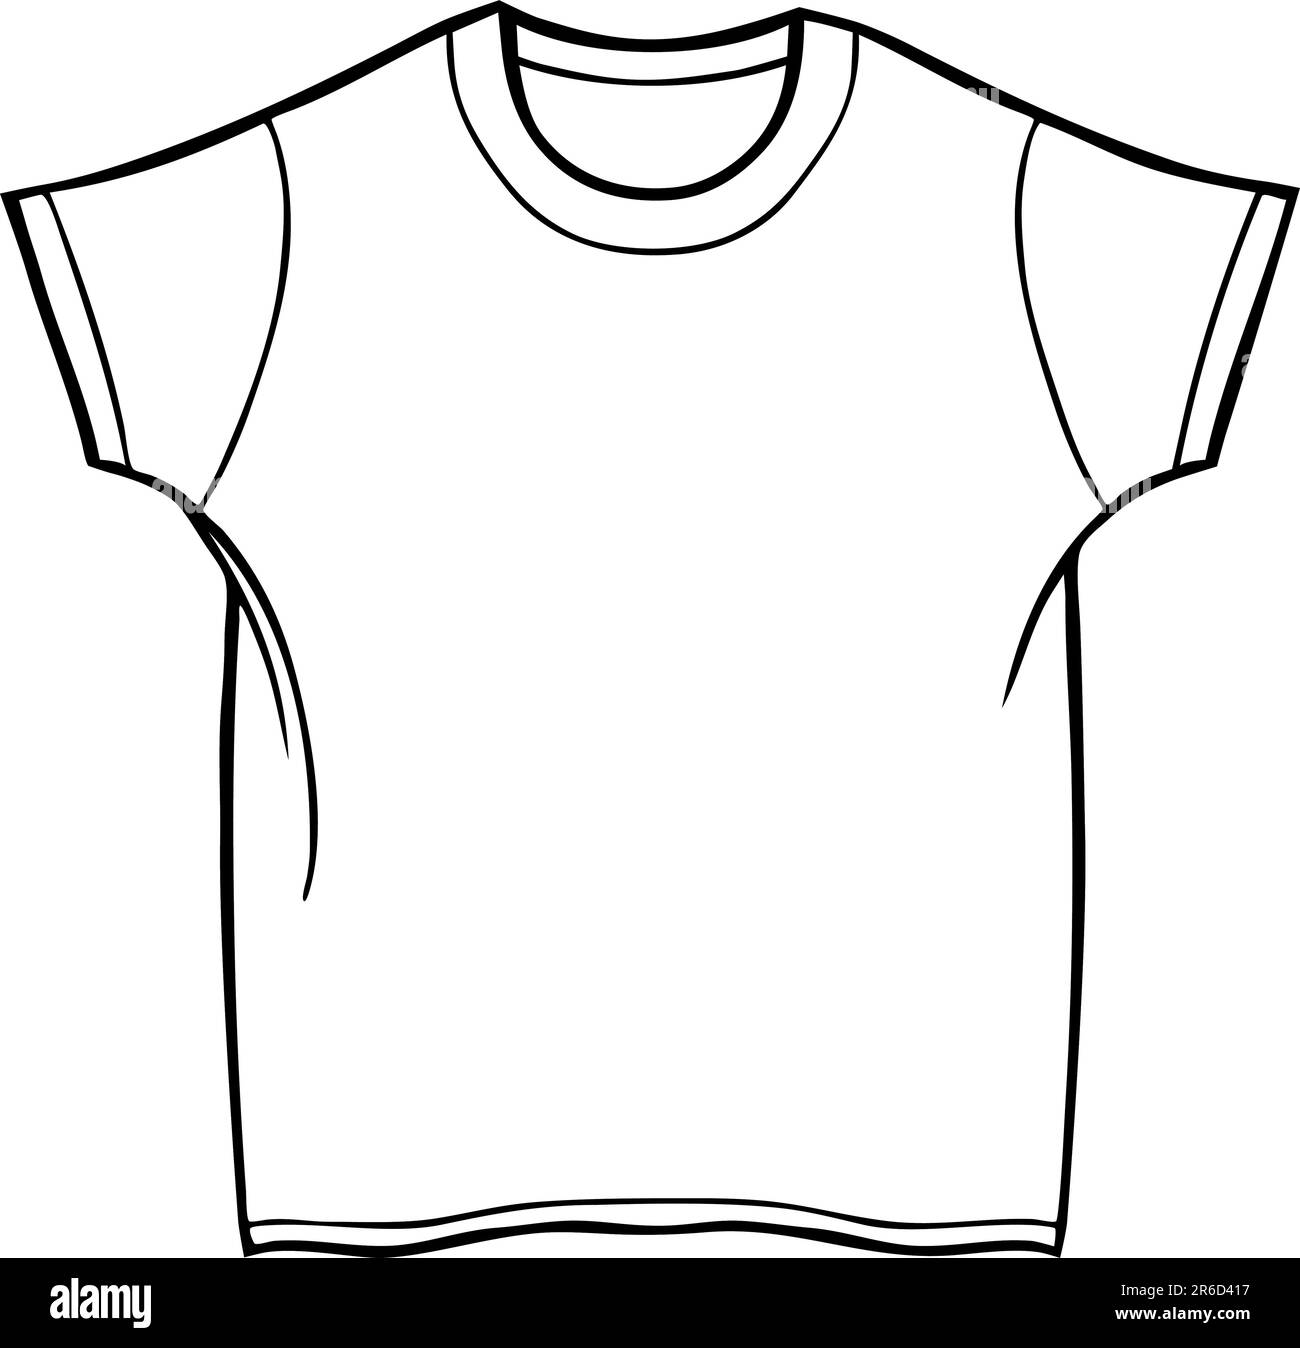 Kleidung Linie Kunst - T-shirt - schwarz / weiß. Stock Vektor